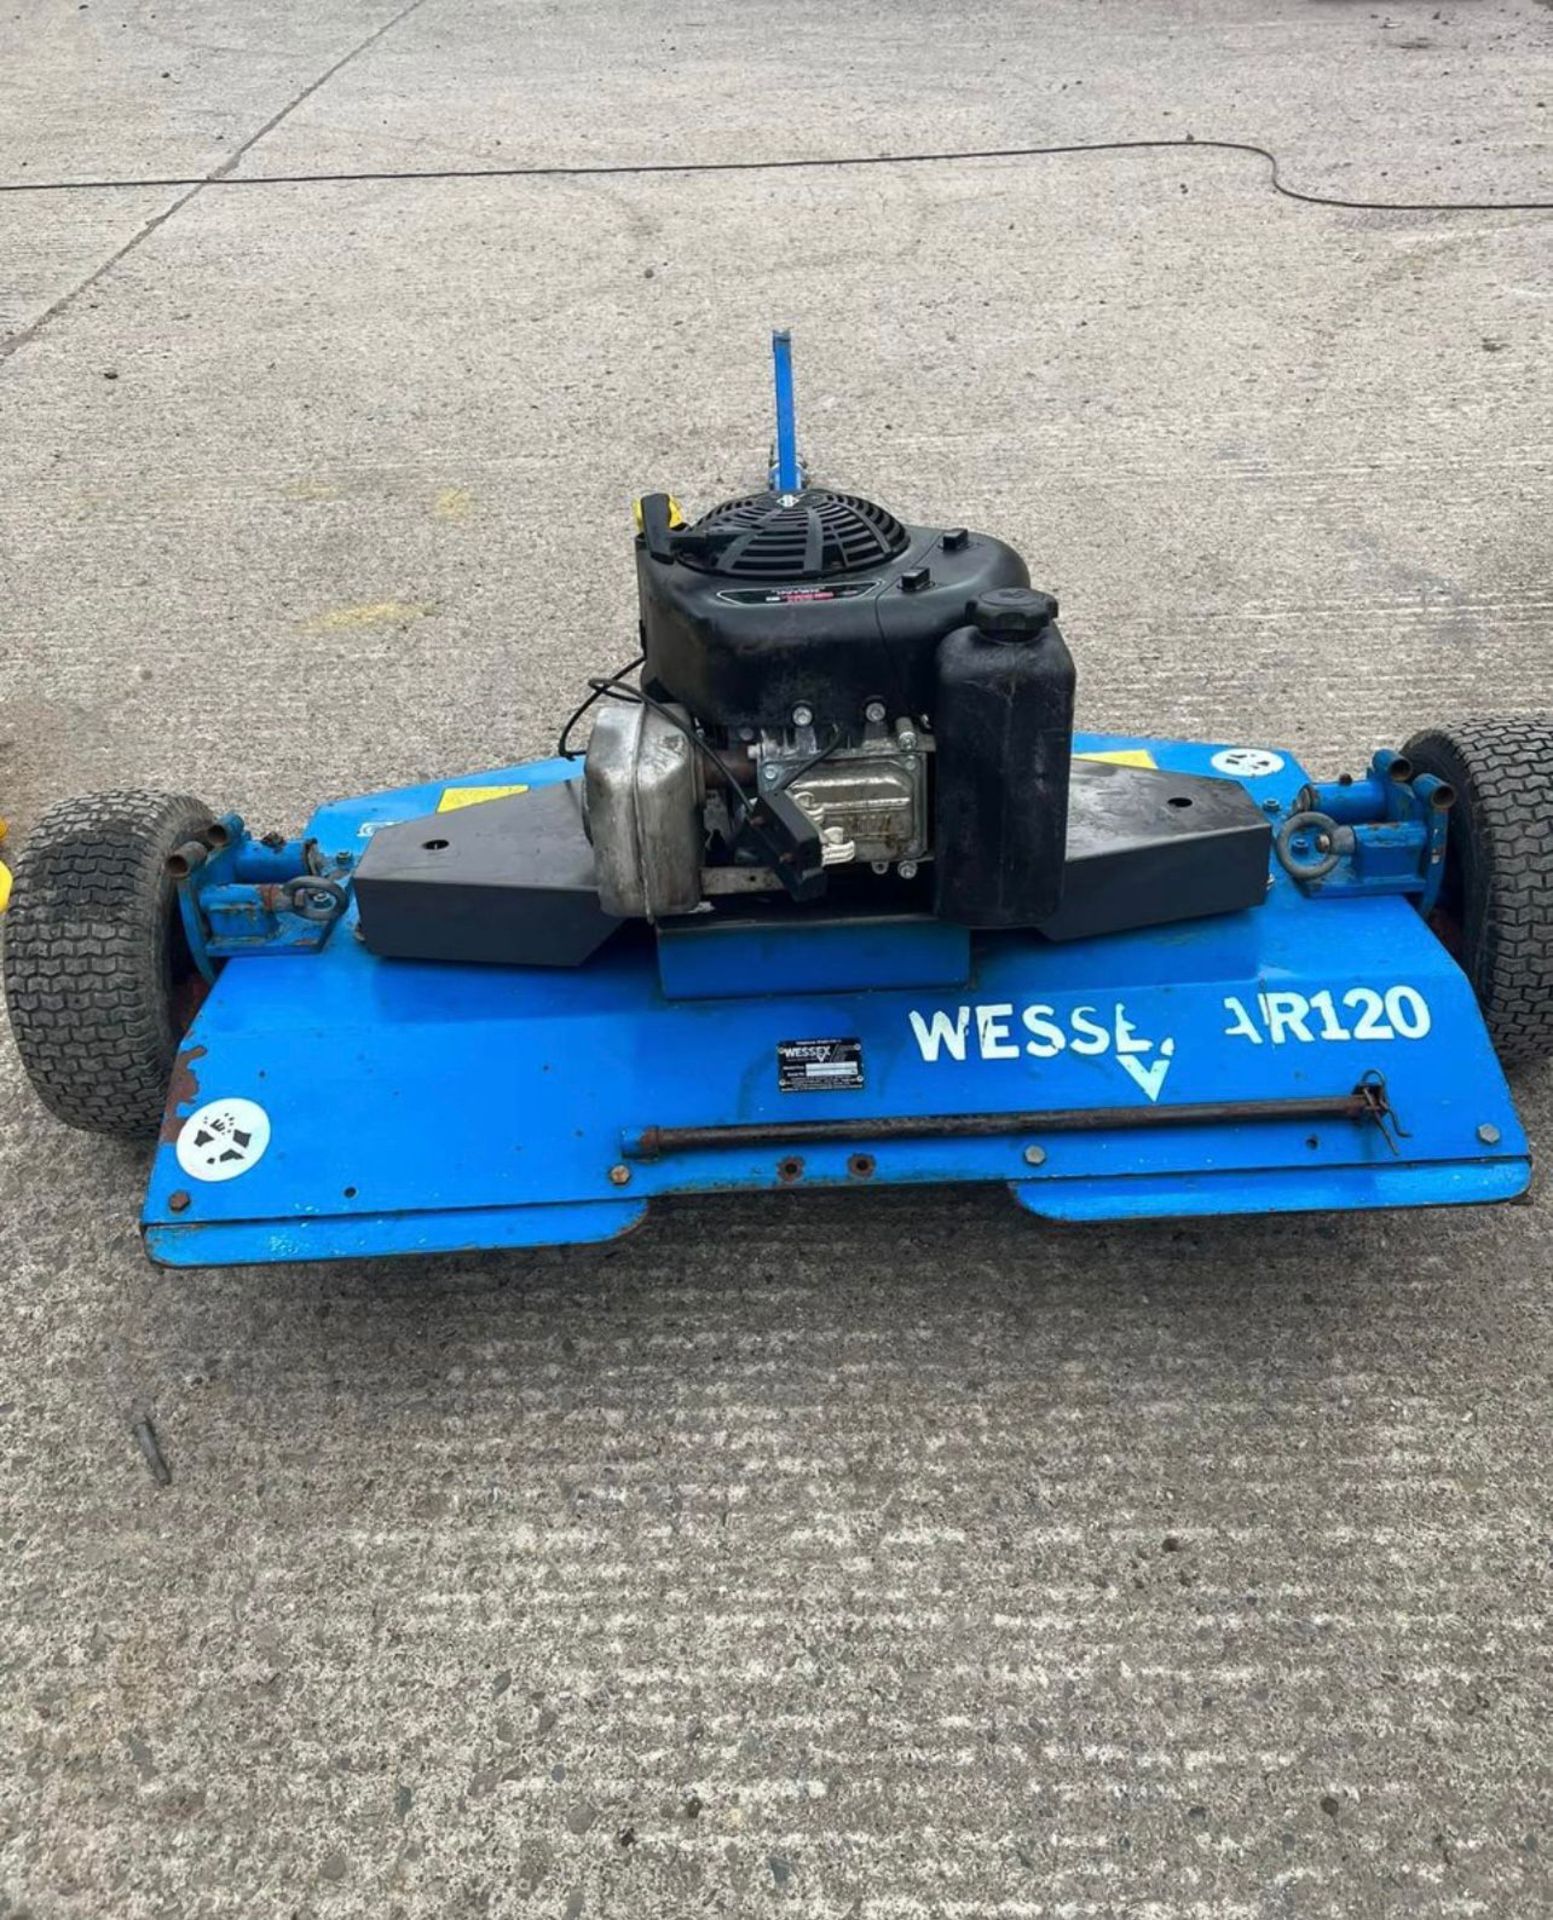 Wessex AR120 1.2 Metre Quad ATV Topper *PLUS VAT*